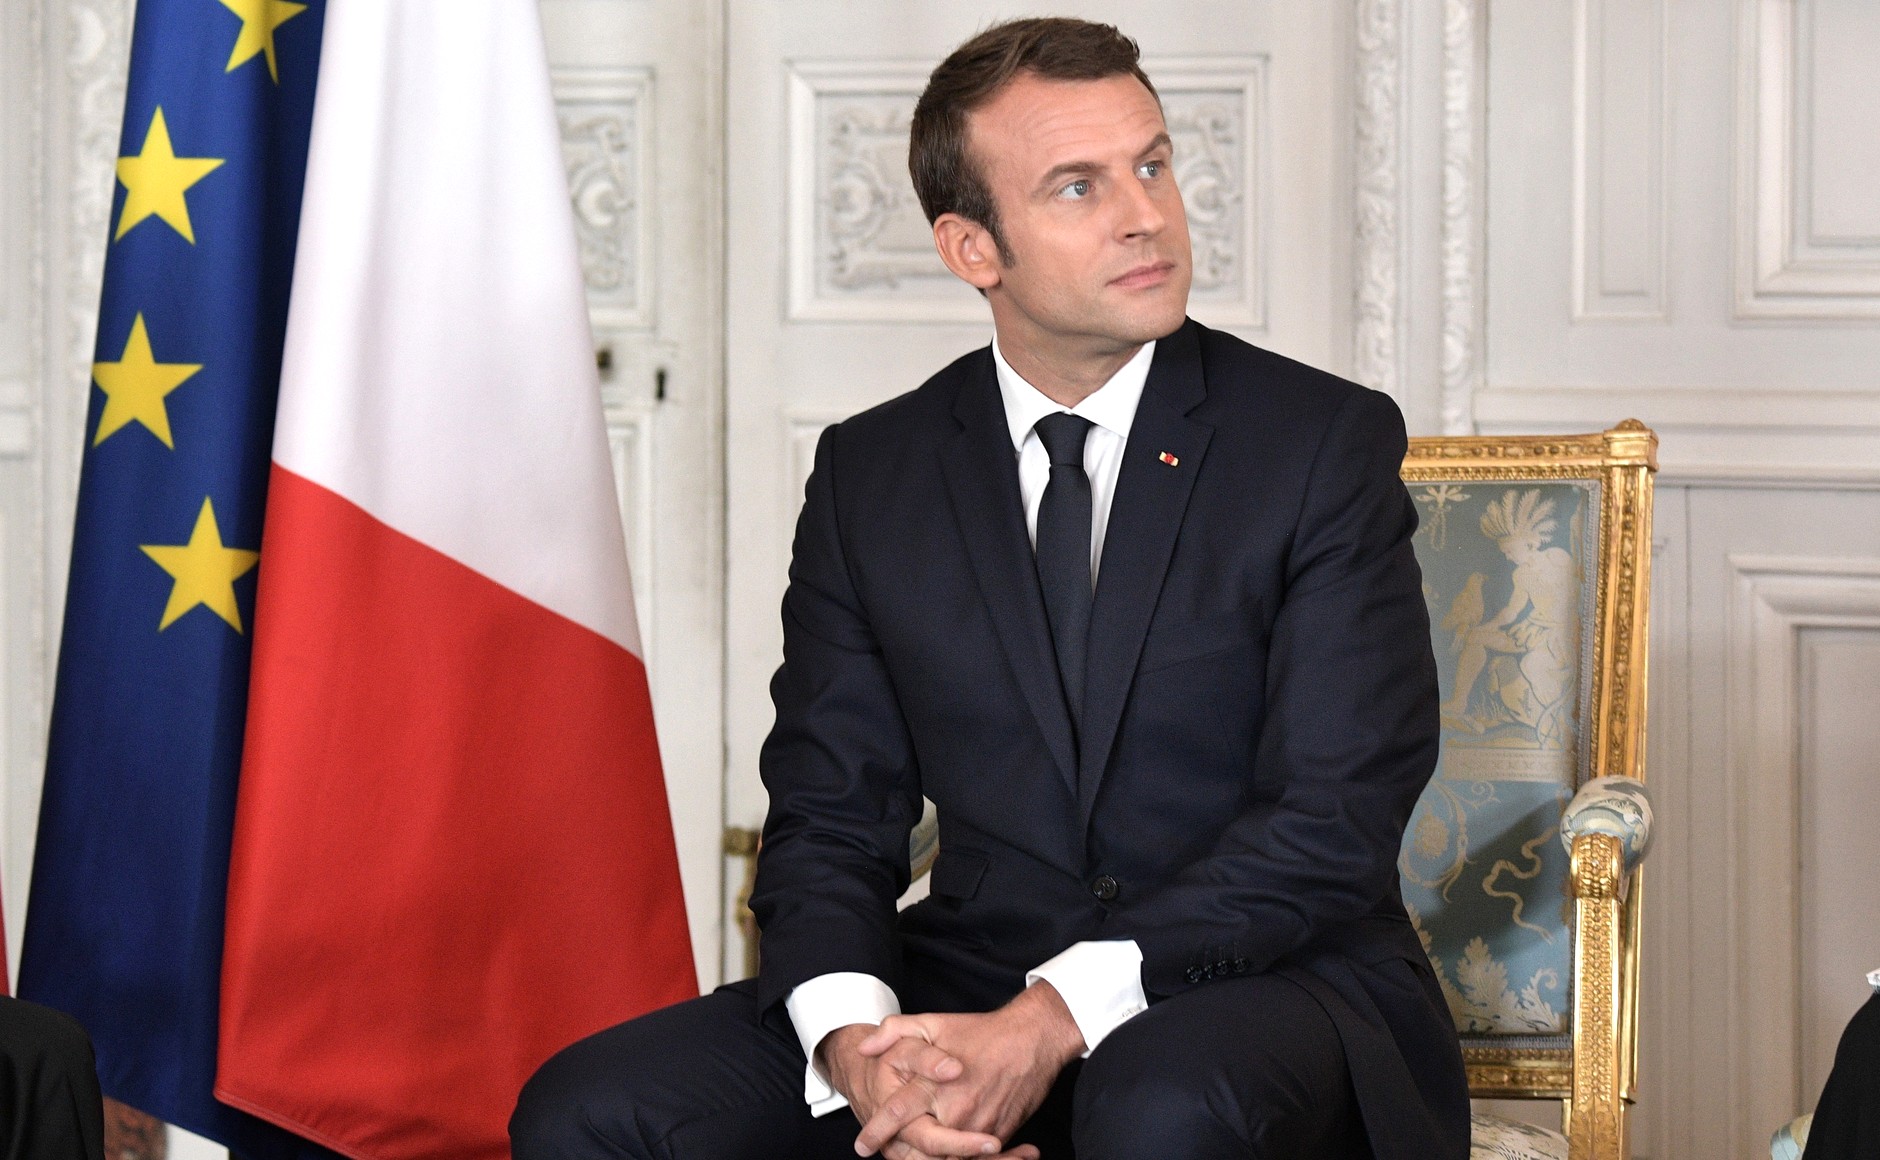     Emmanuel Macron : "Nous sommes en guerre"

